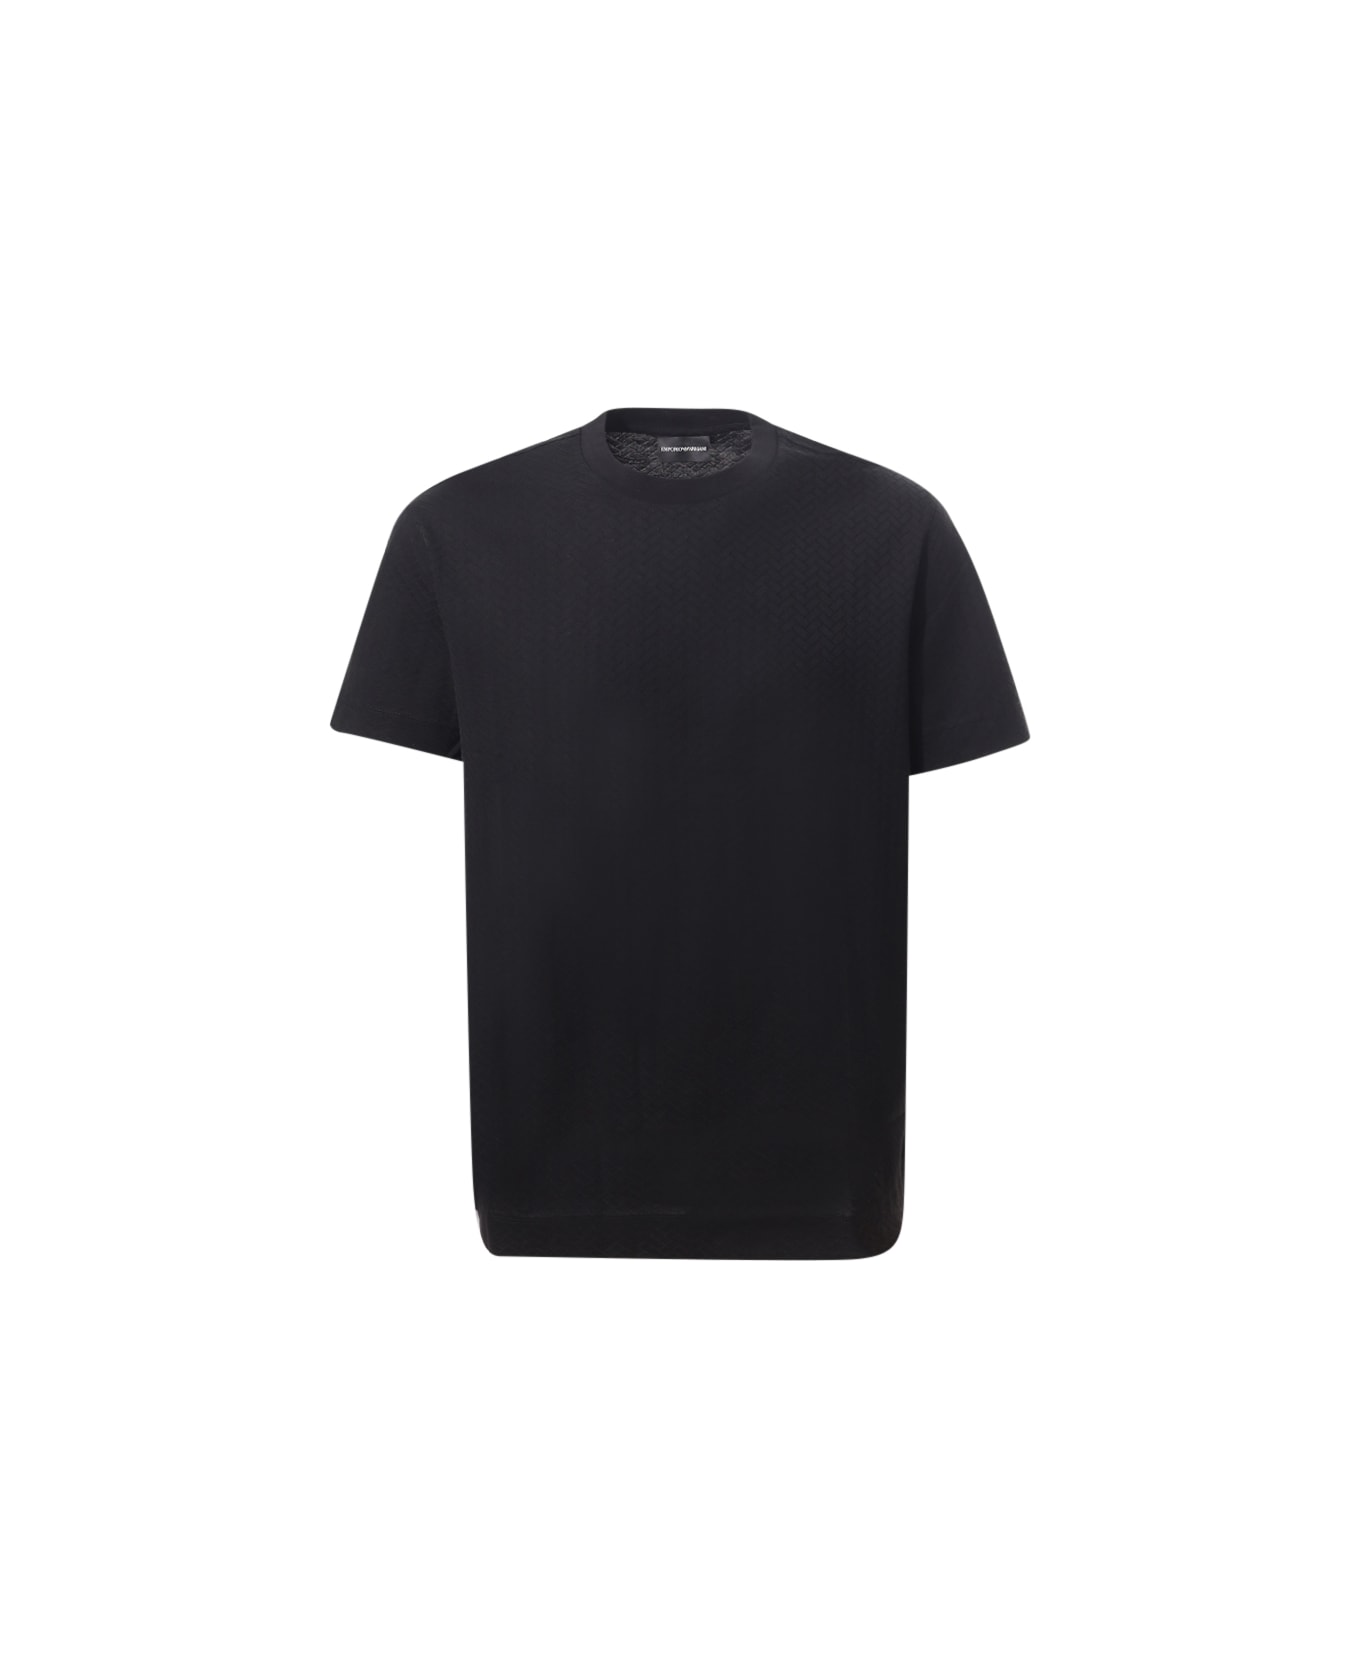 Emporio Armani T-shirt Emporio Armani - Black シャツ